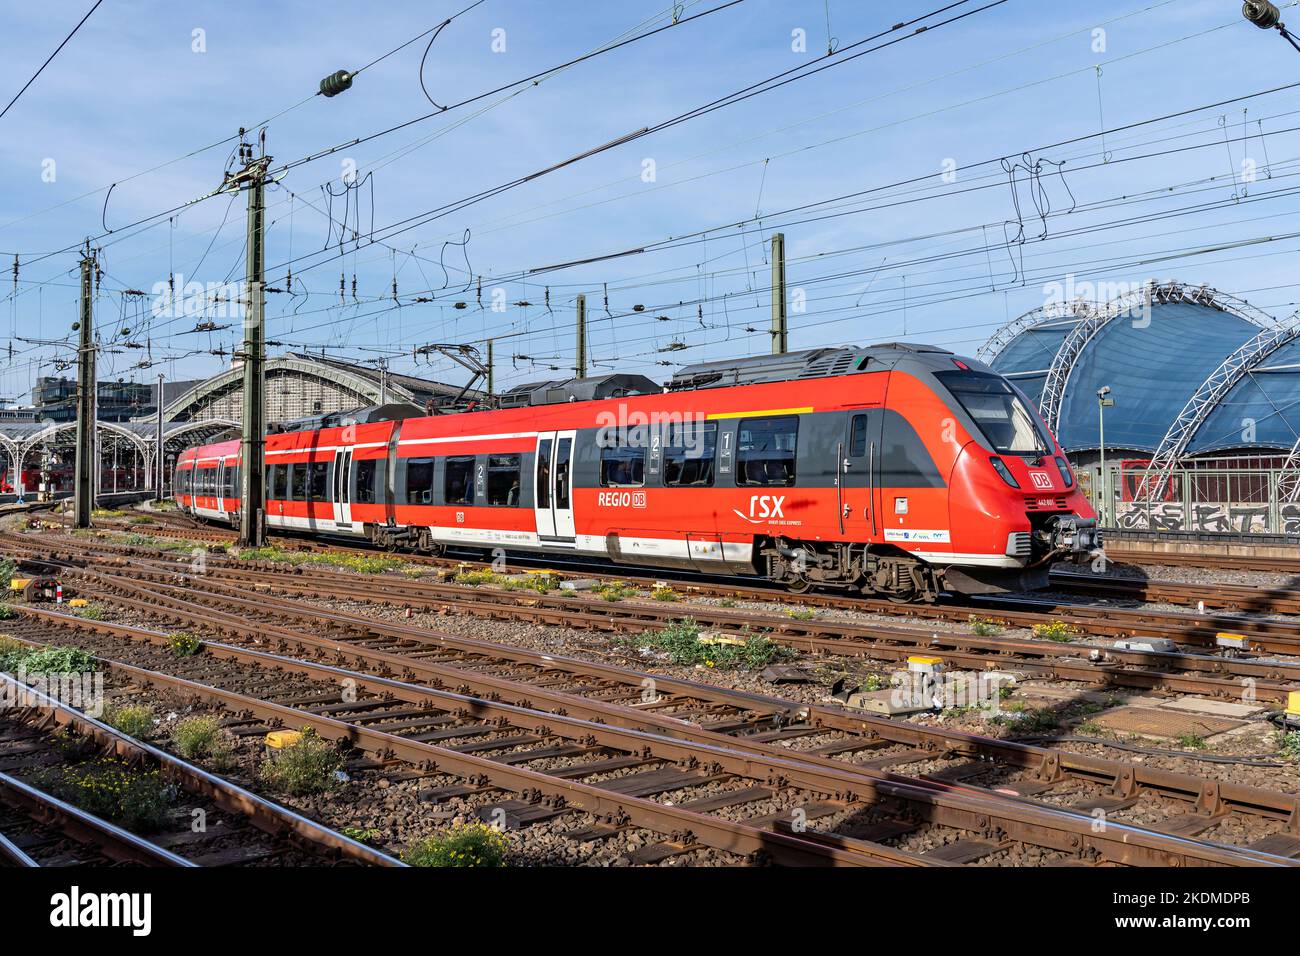 DB Regio Bombardier Talent 2 treno alla stazione centrale di Colonia Foto Stock